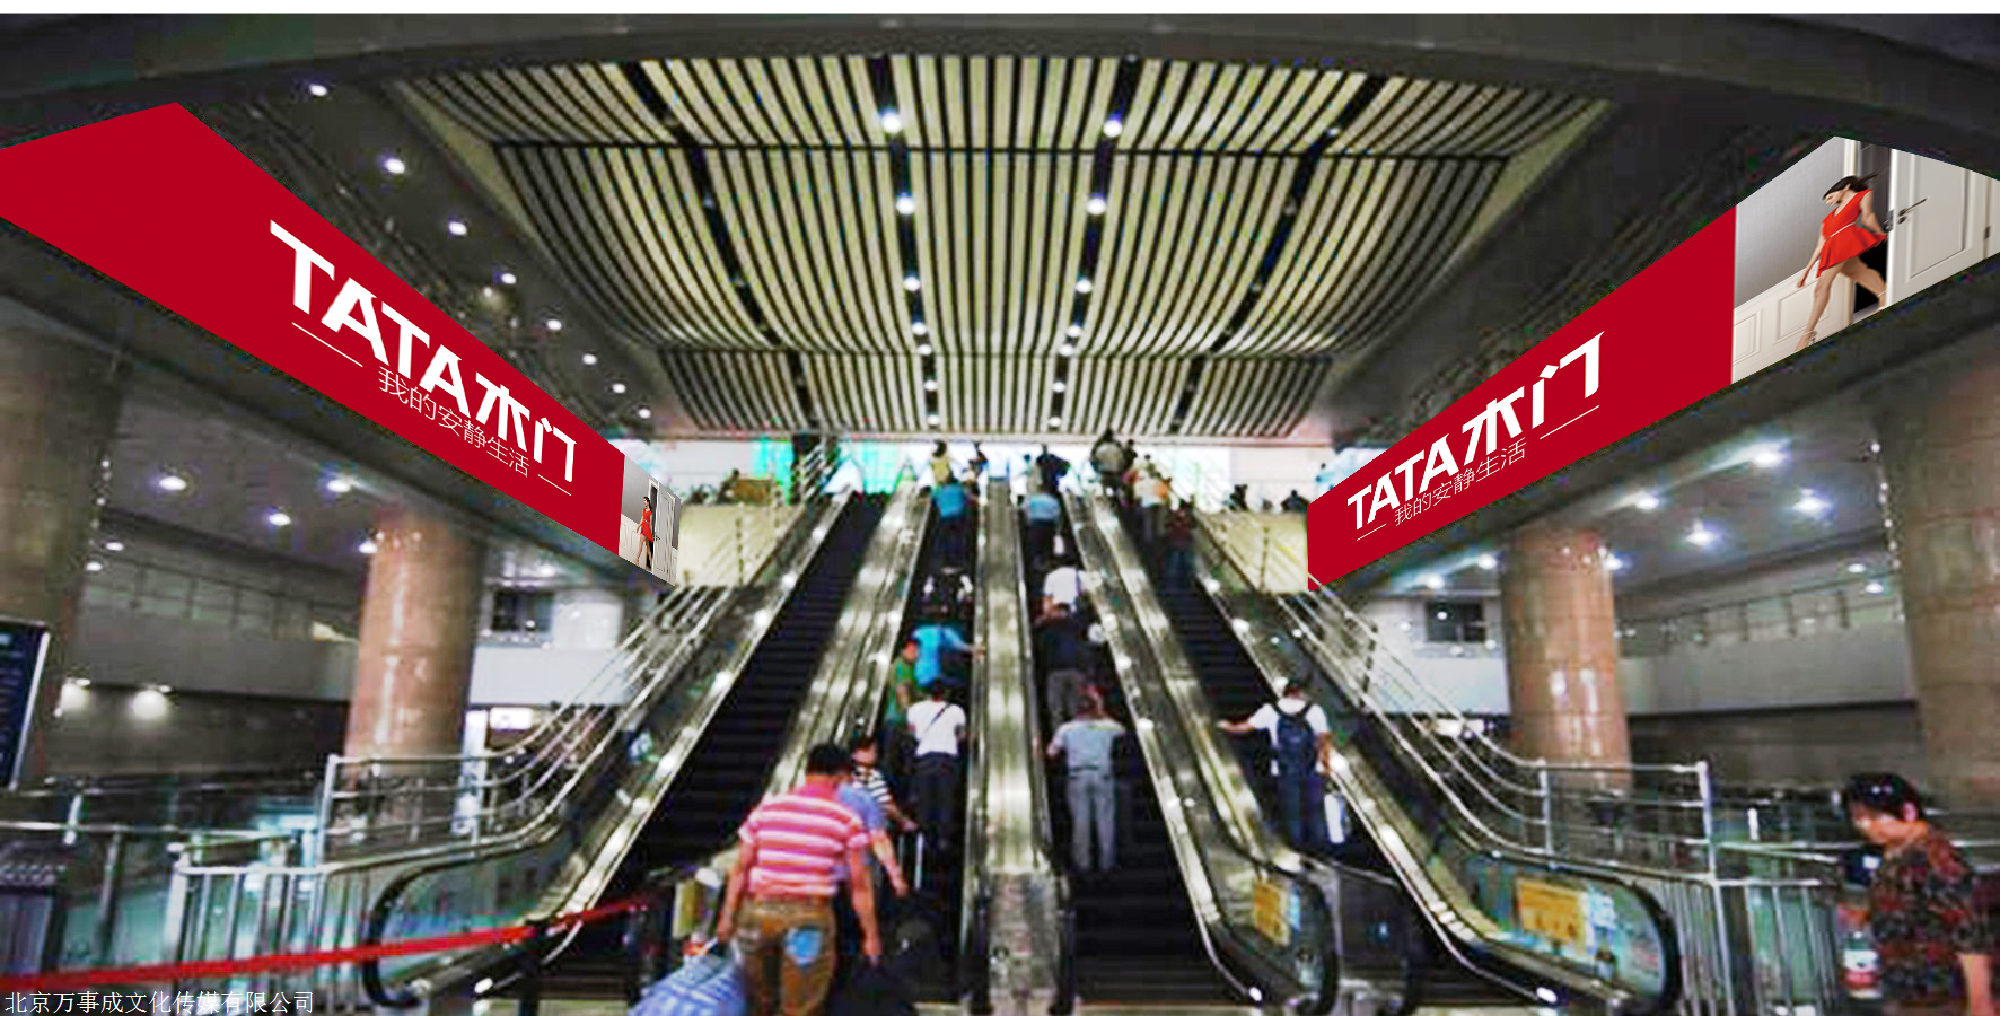 北京西站南进站大厅广告整体布局